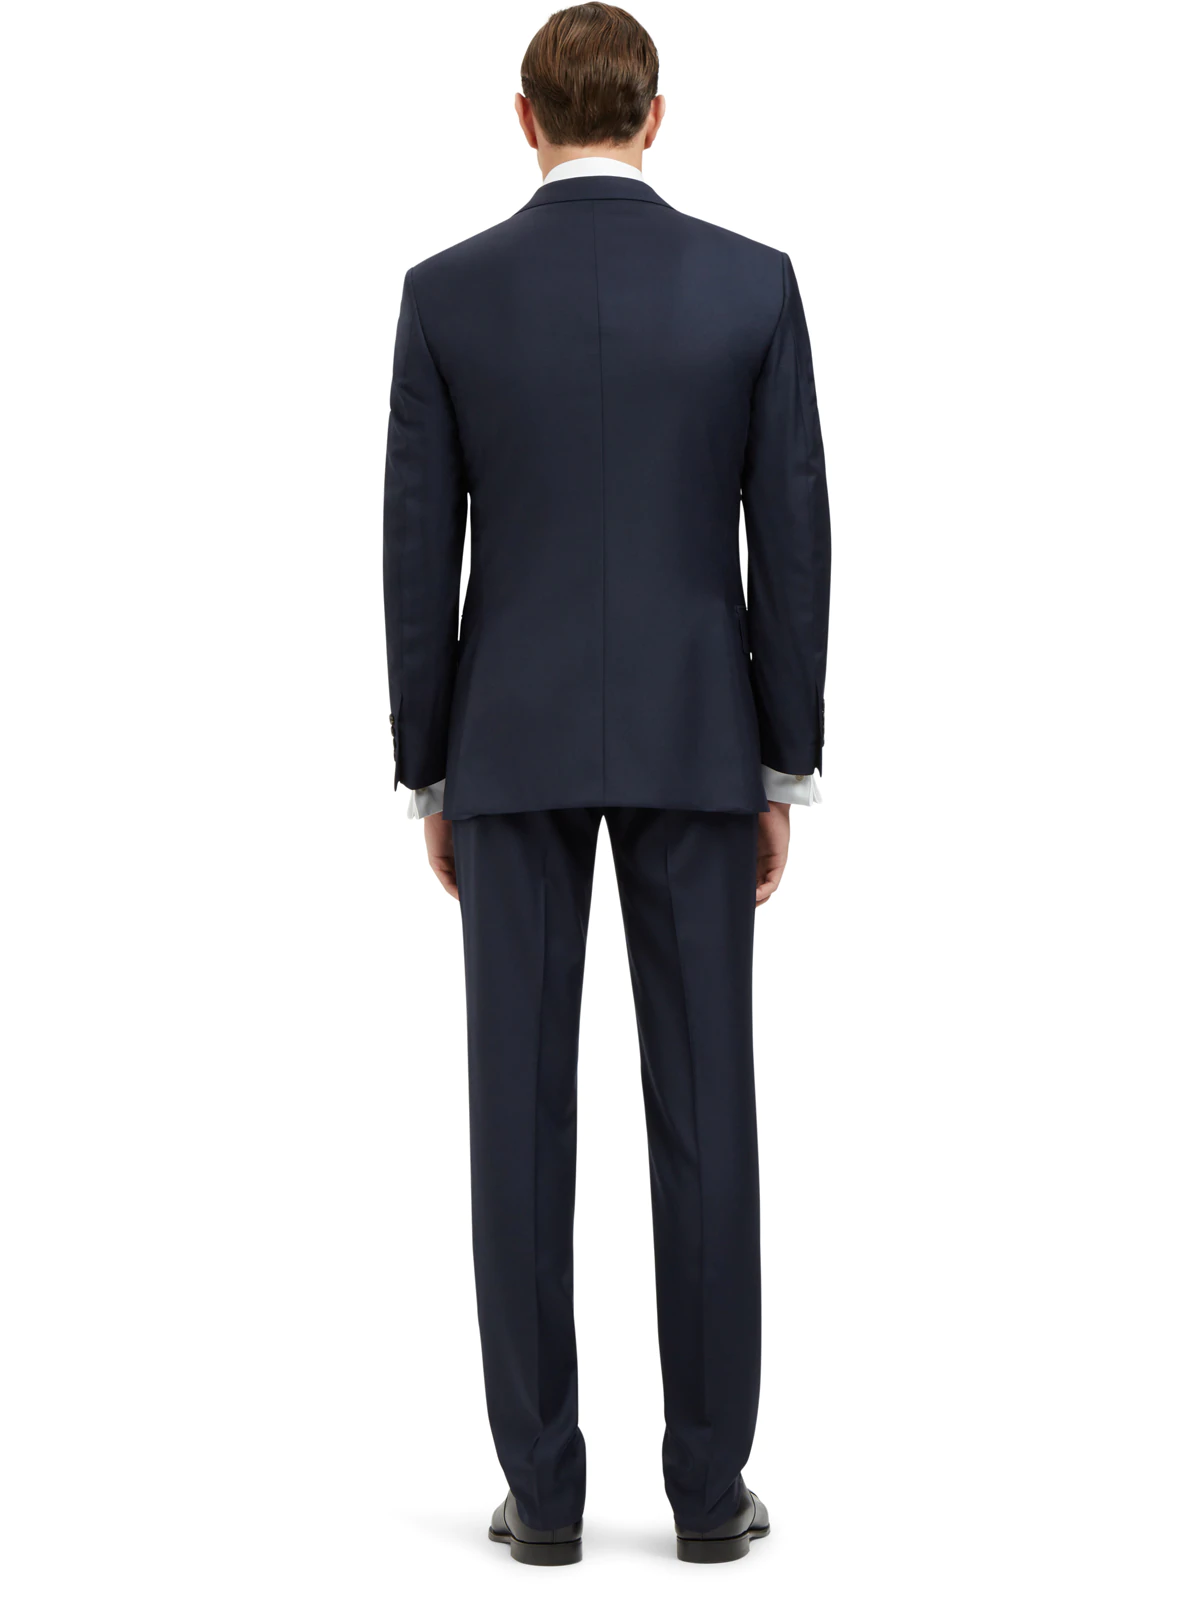 ダークグレー スーパー120 ウールツイル クラシック スーツ ネクタイ付き